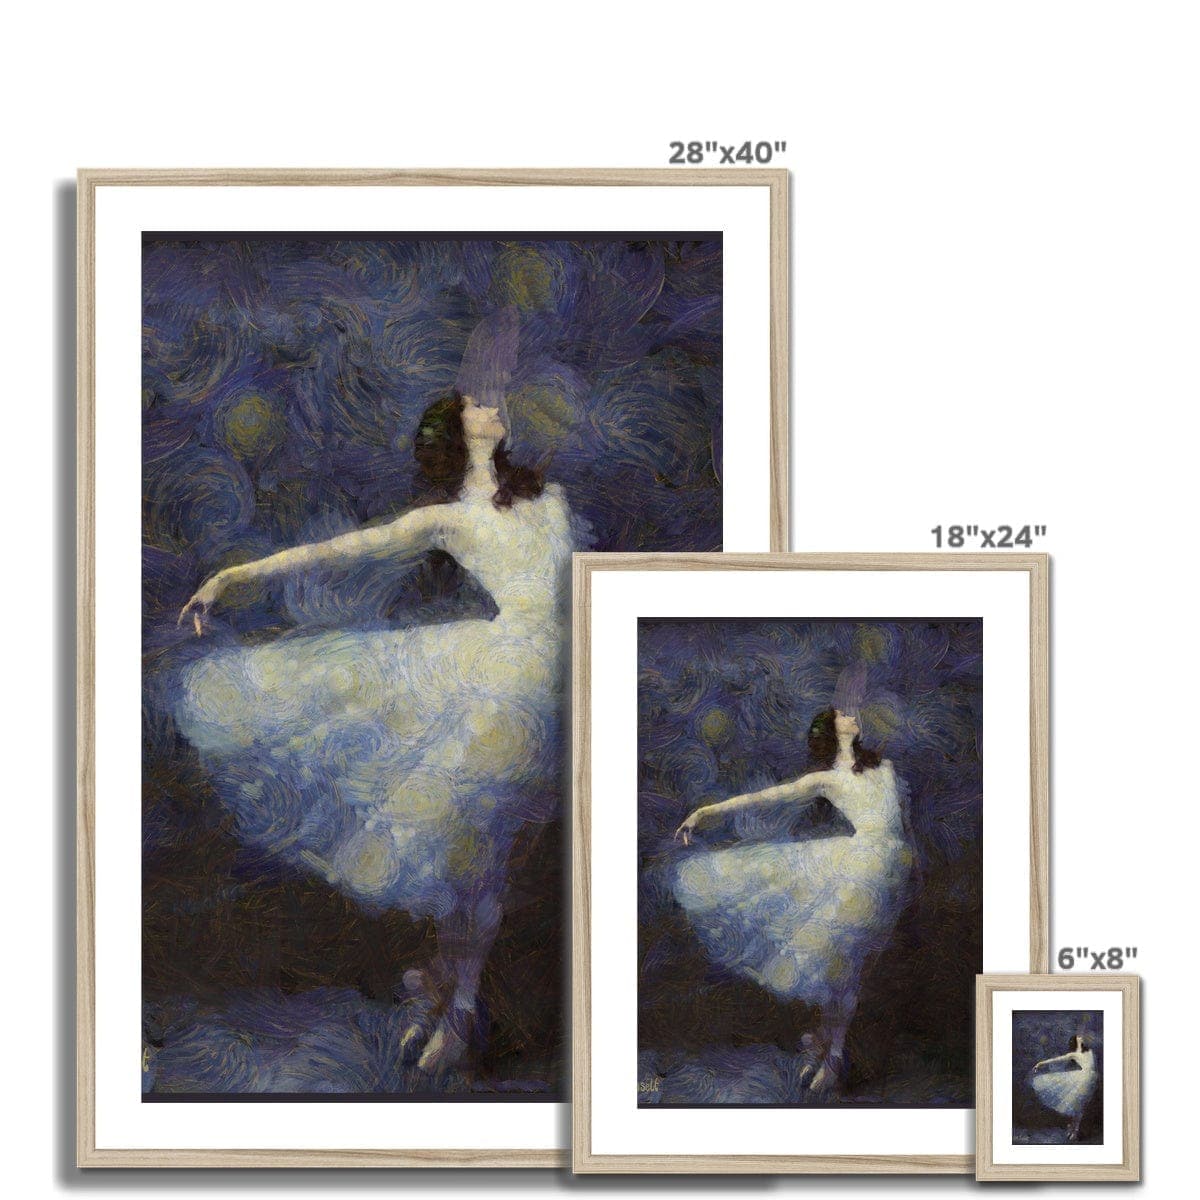 Fairy Dance - Ballerina White Dress Framed & Mounted Print